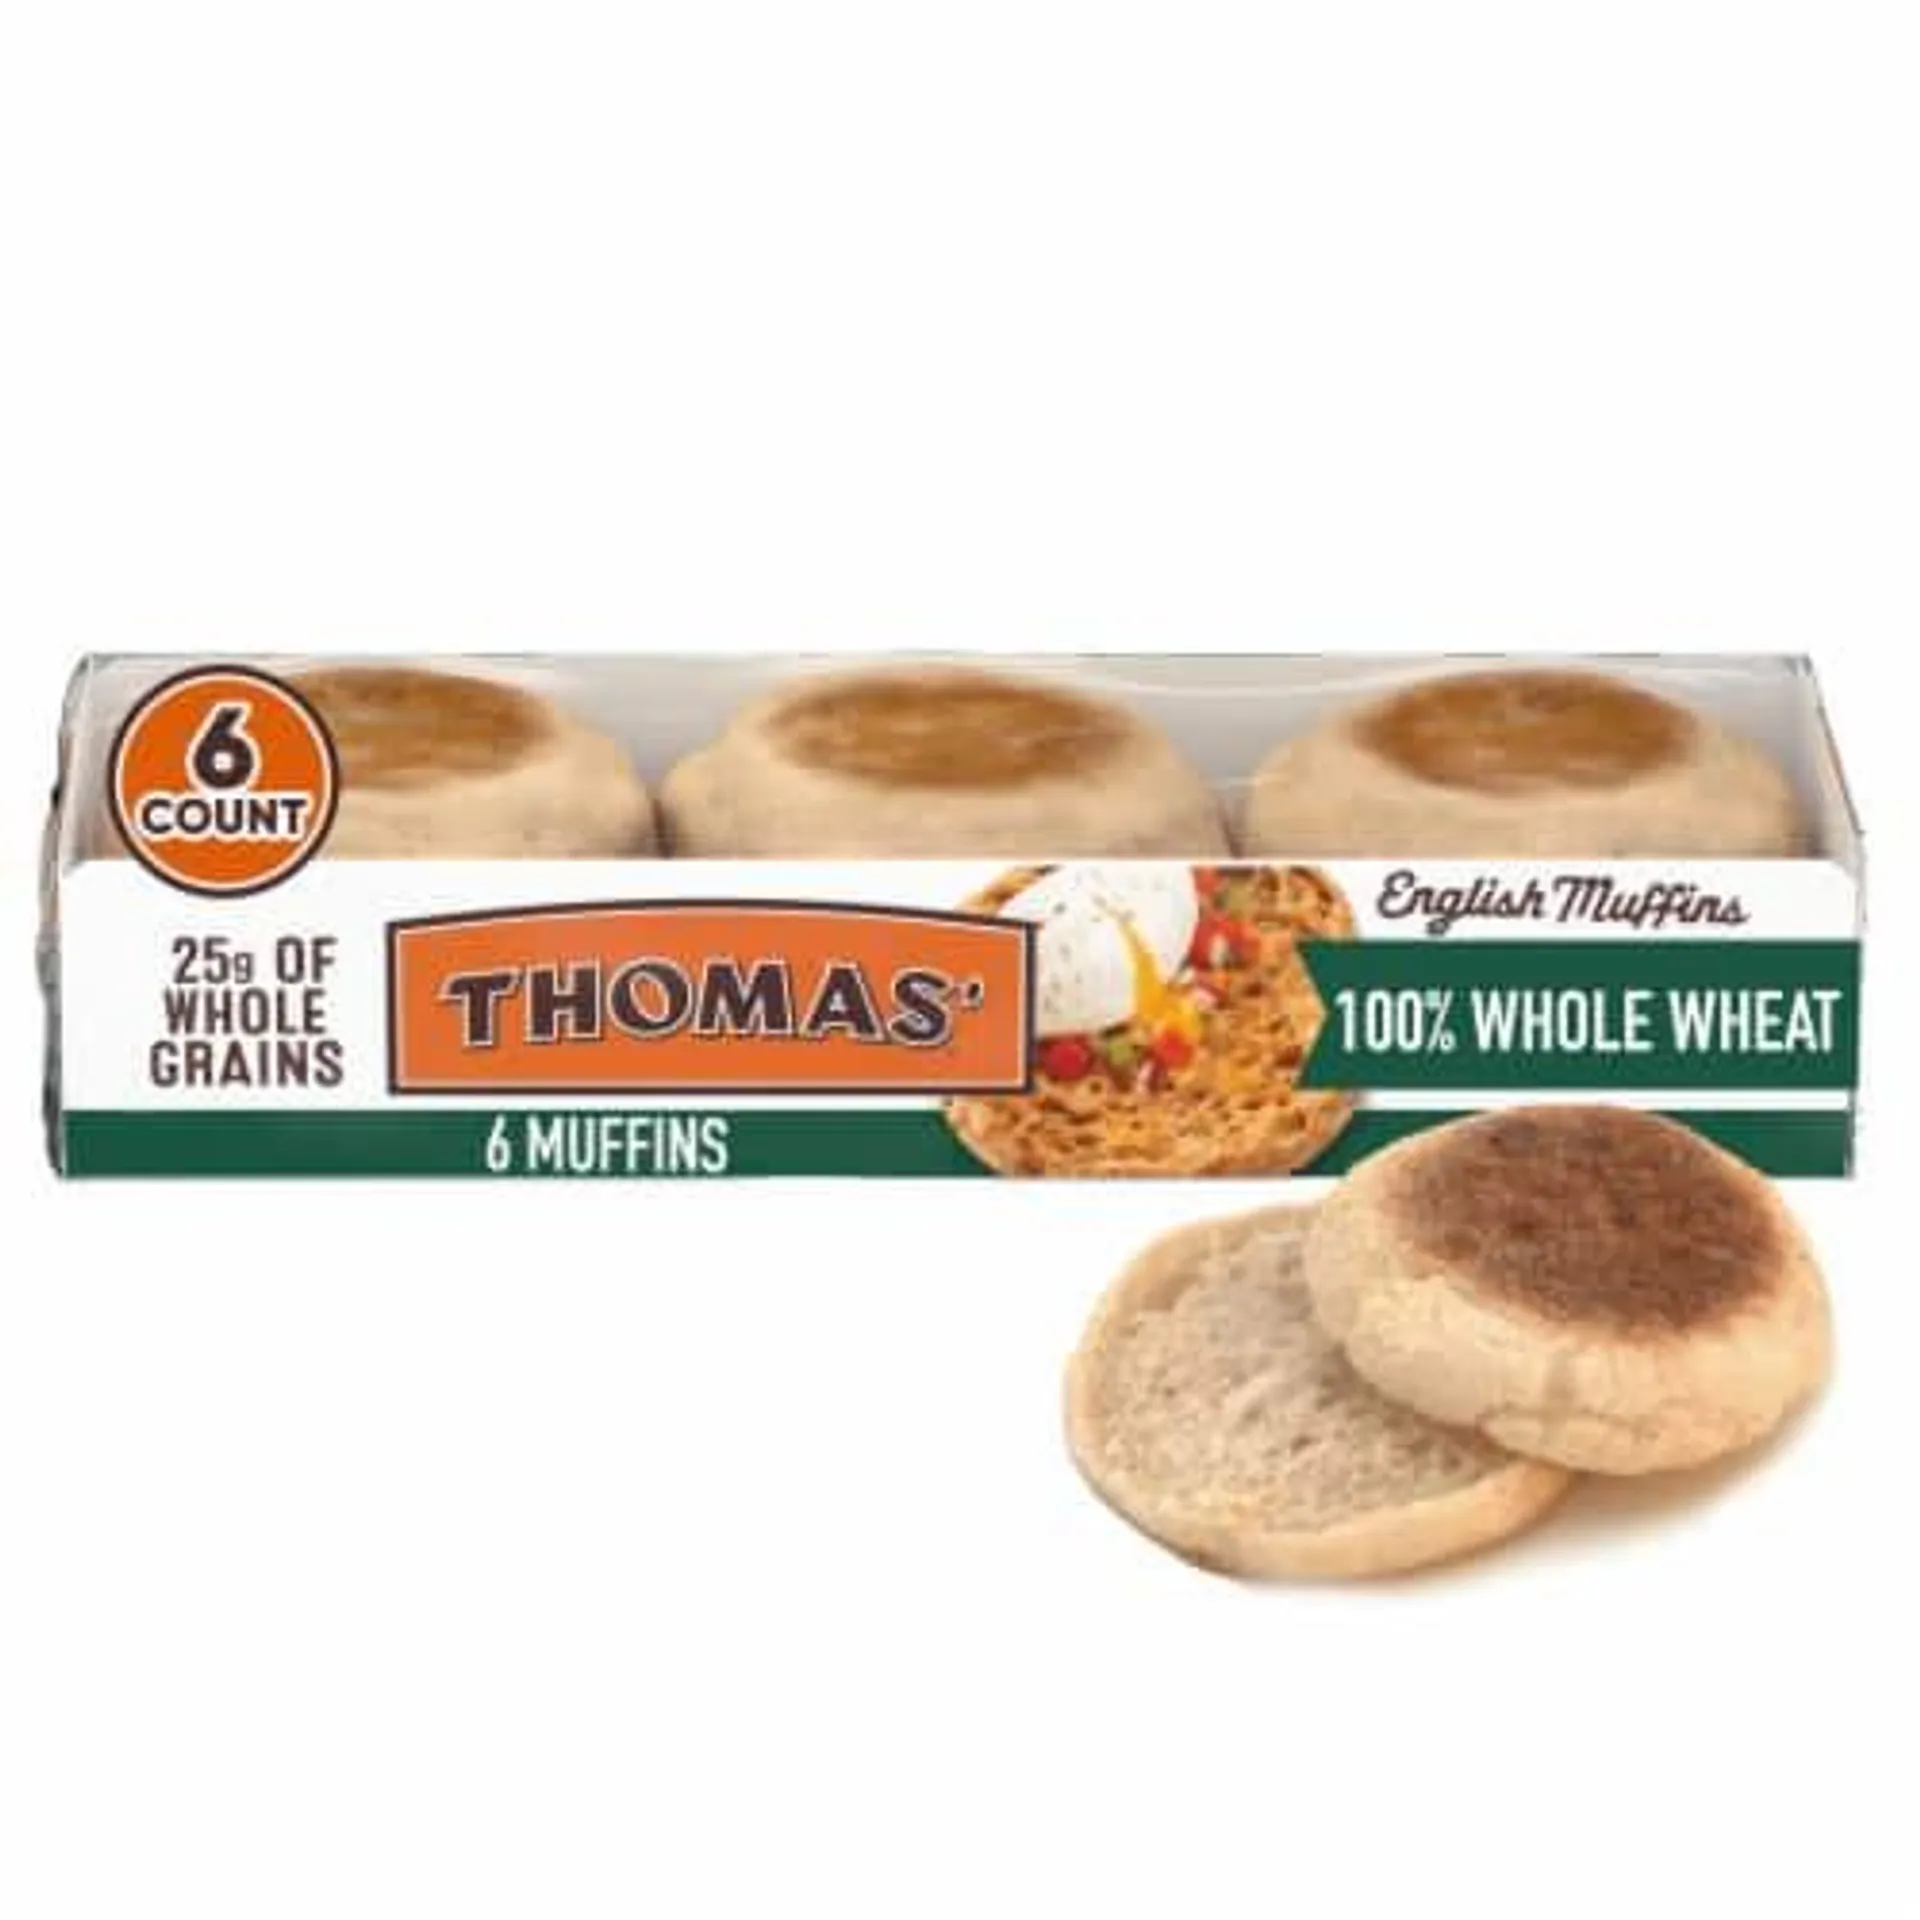 Thomas' 100% Whole Wheat English Muffins